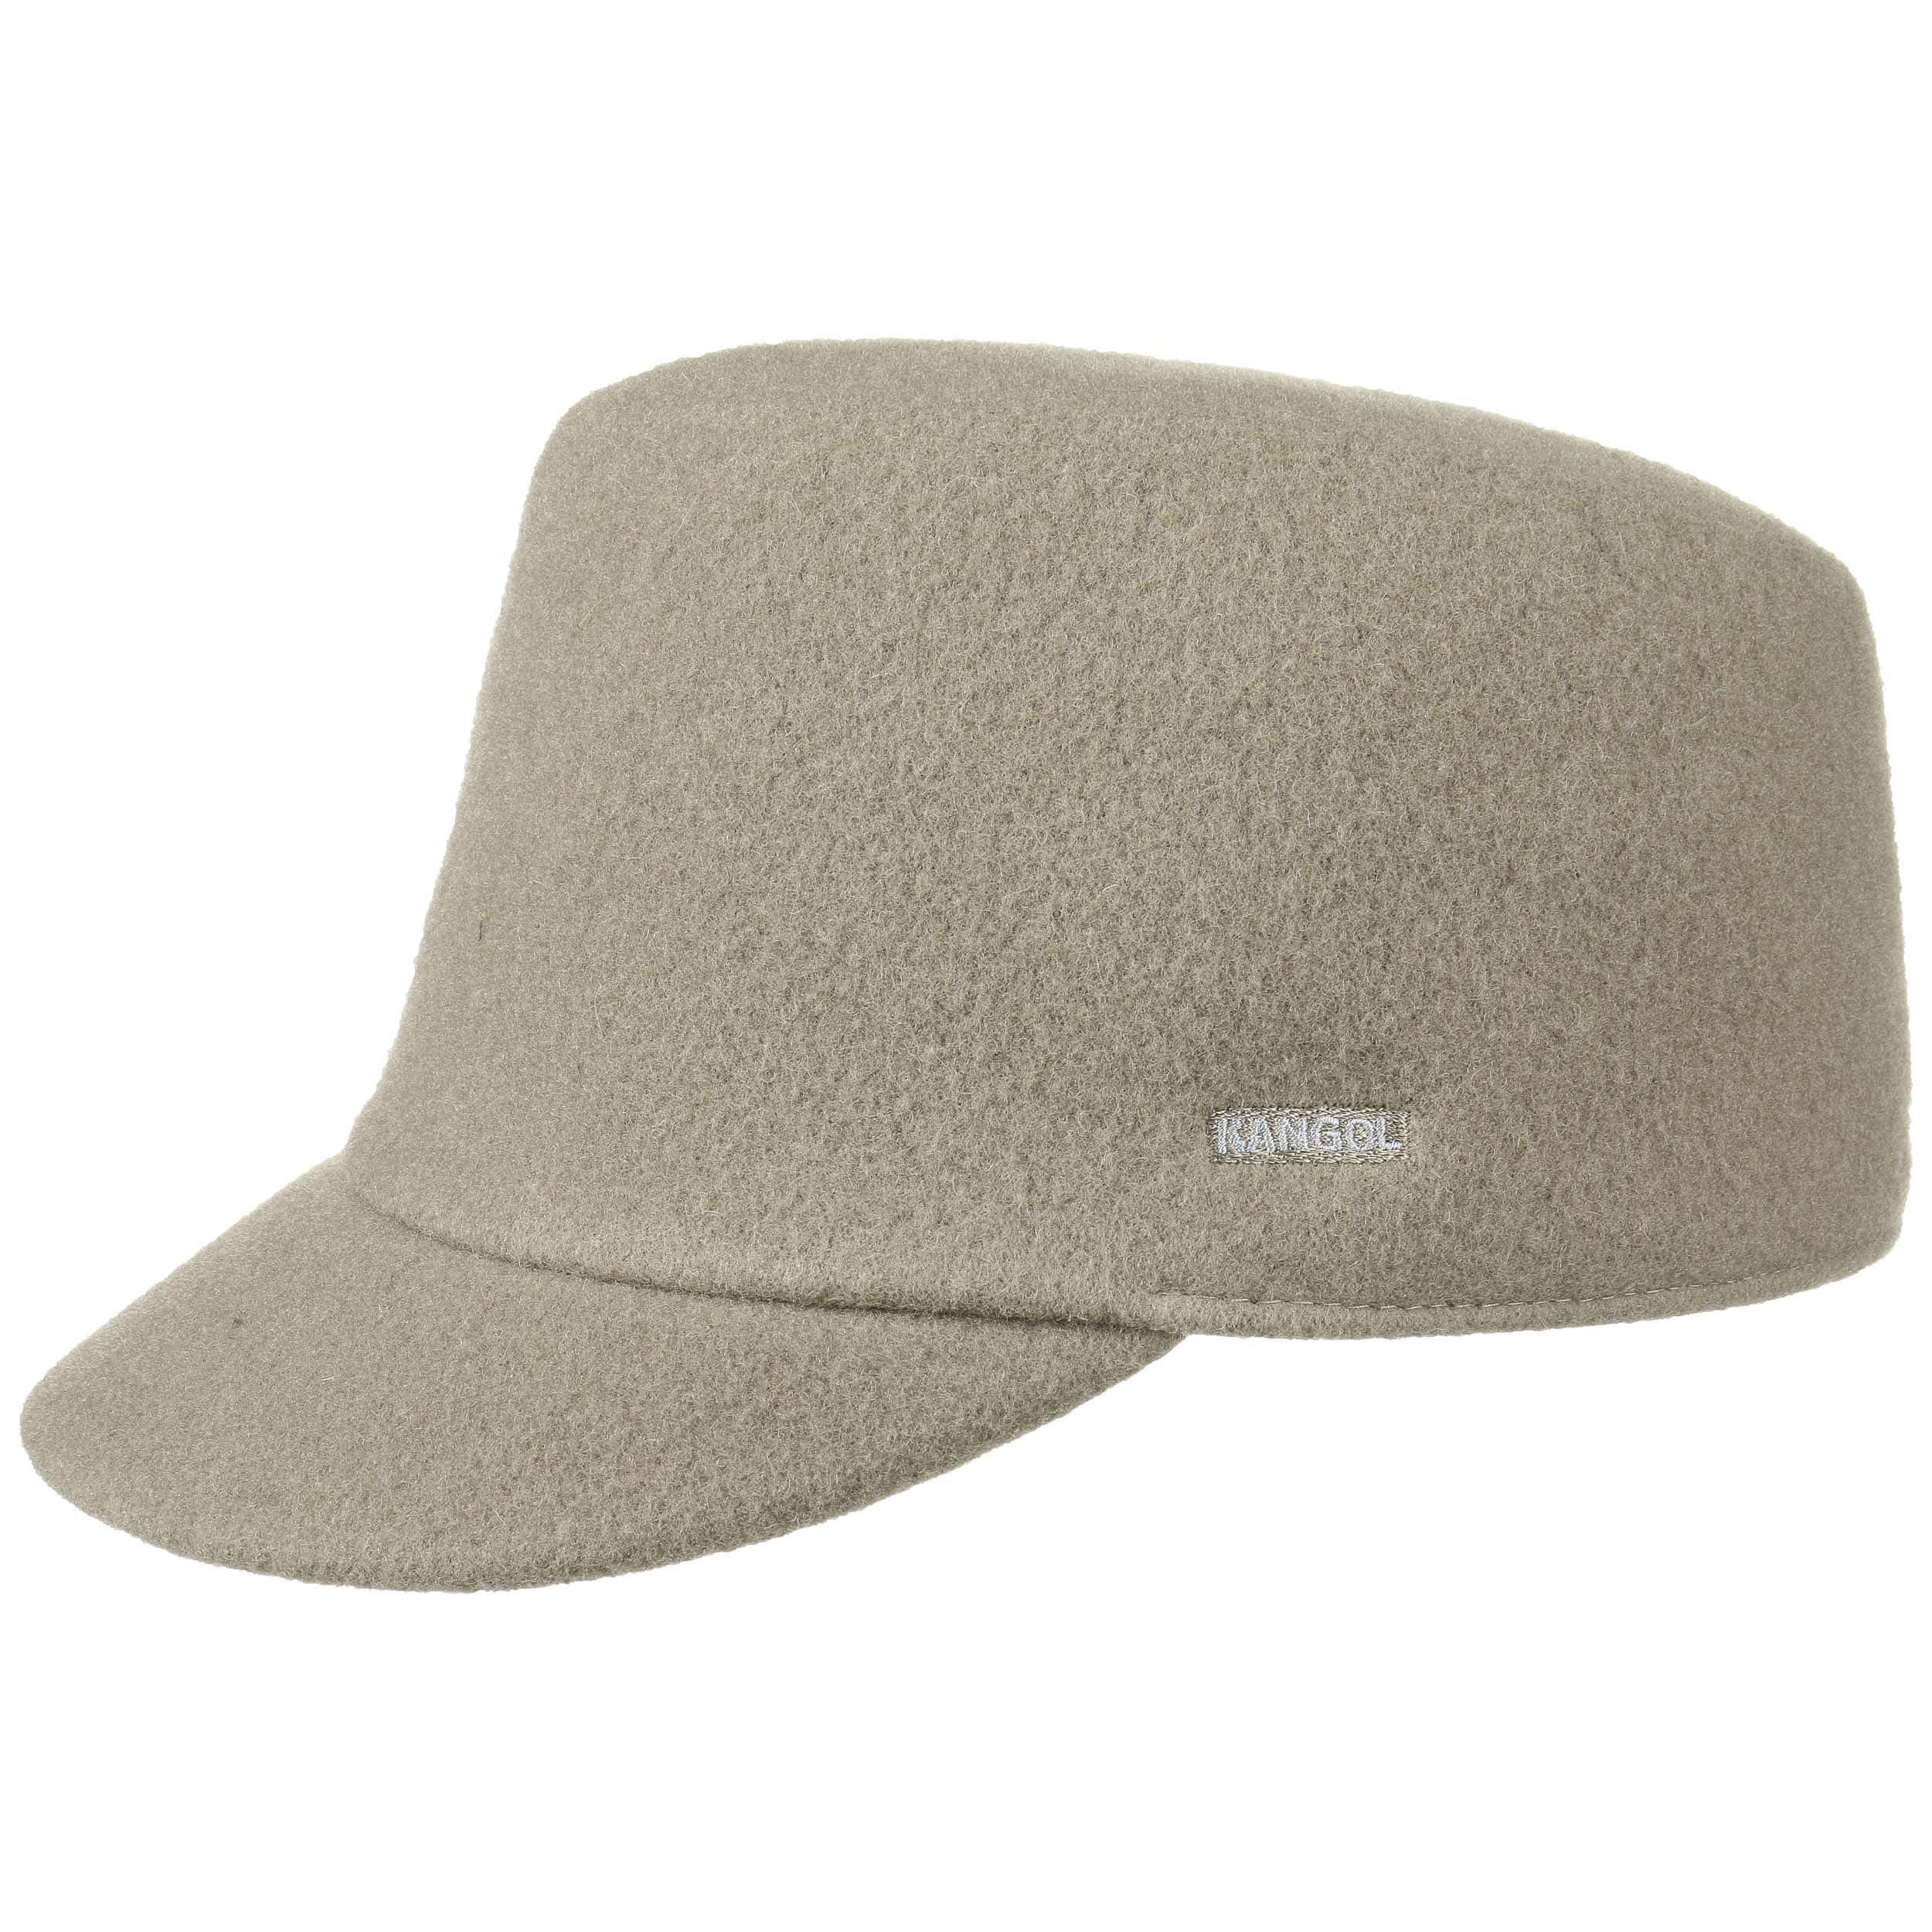 特價區Kangol Wool Colette Cap 帽子